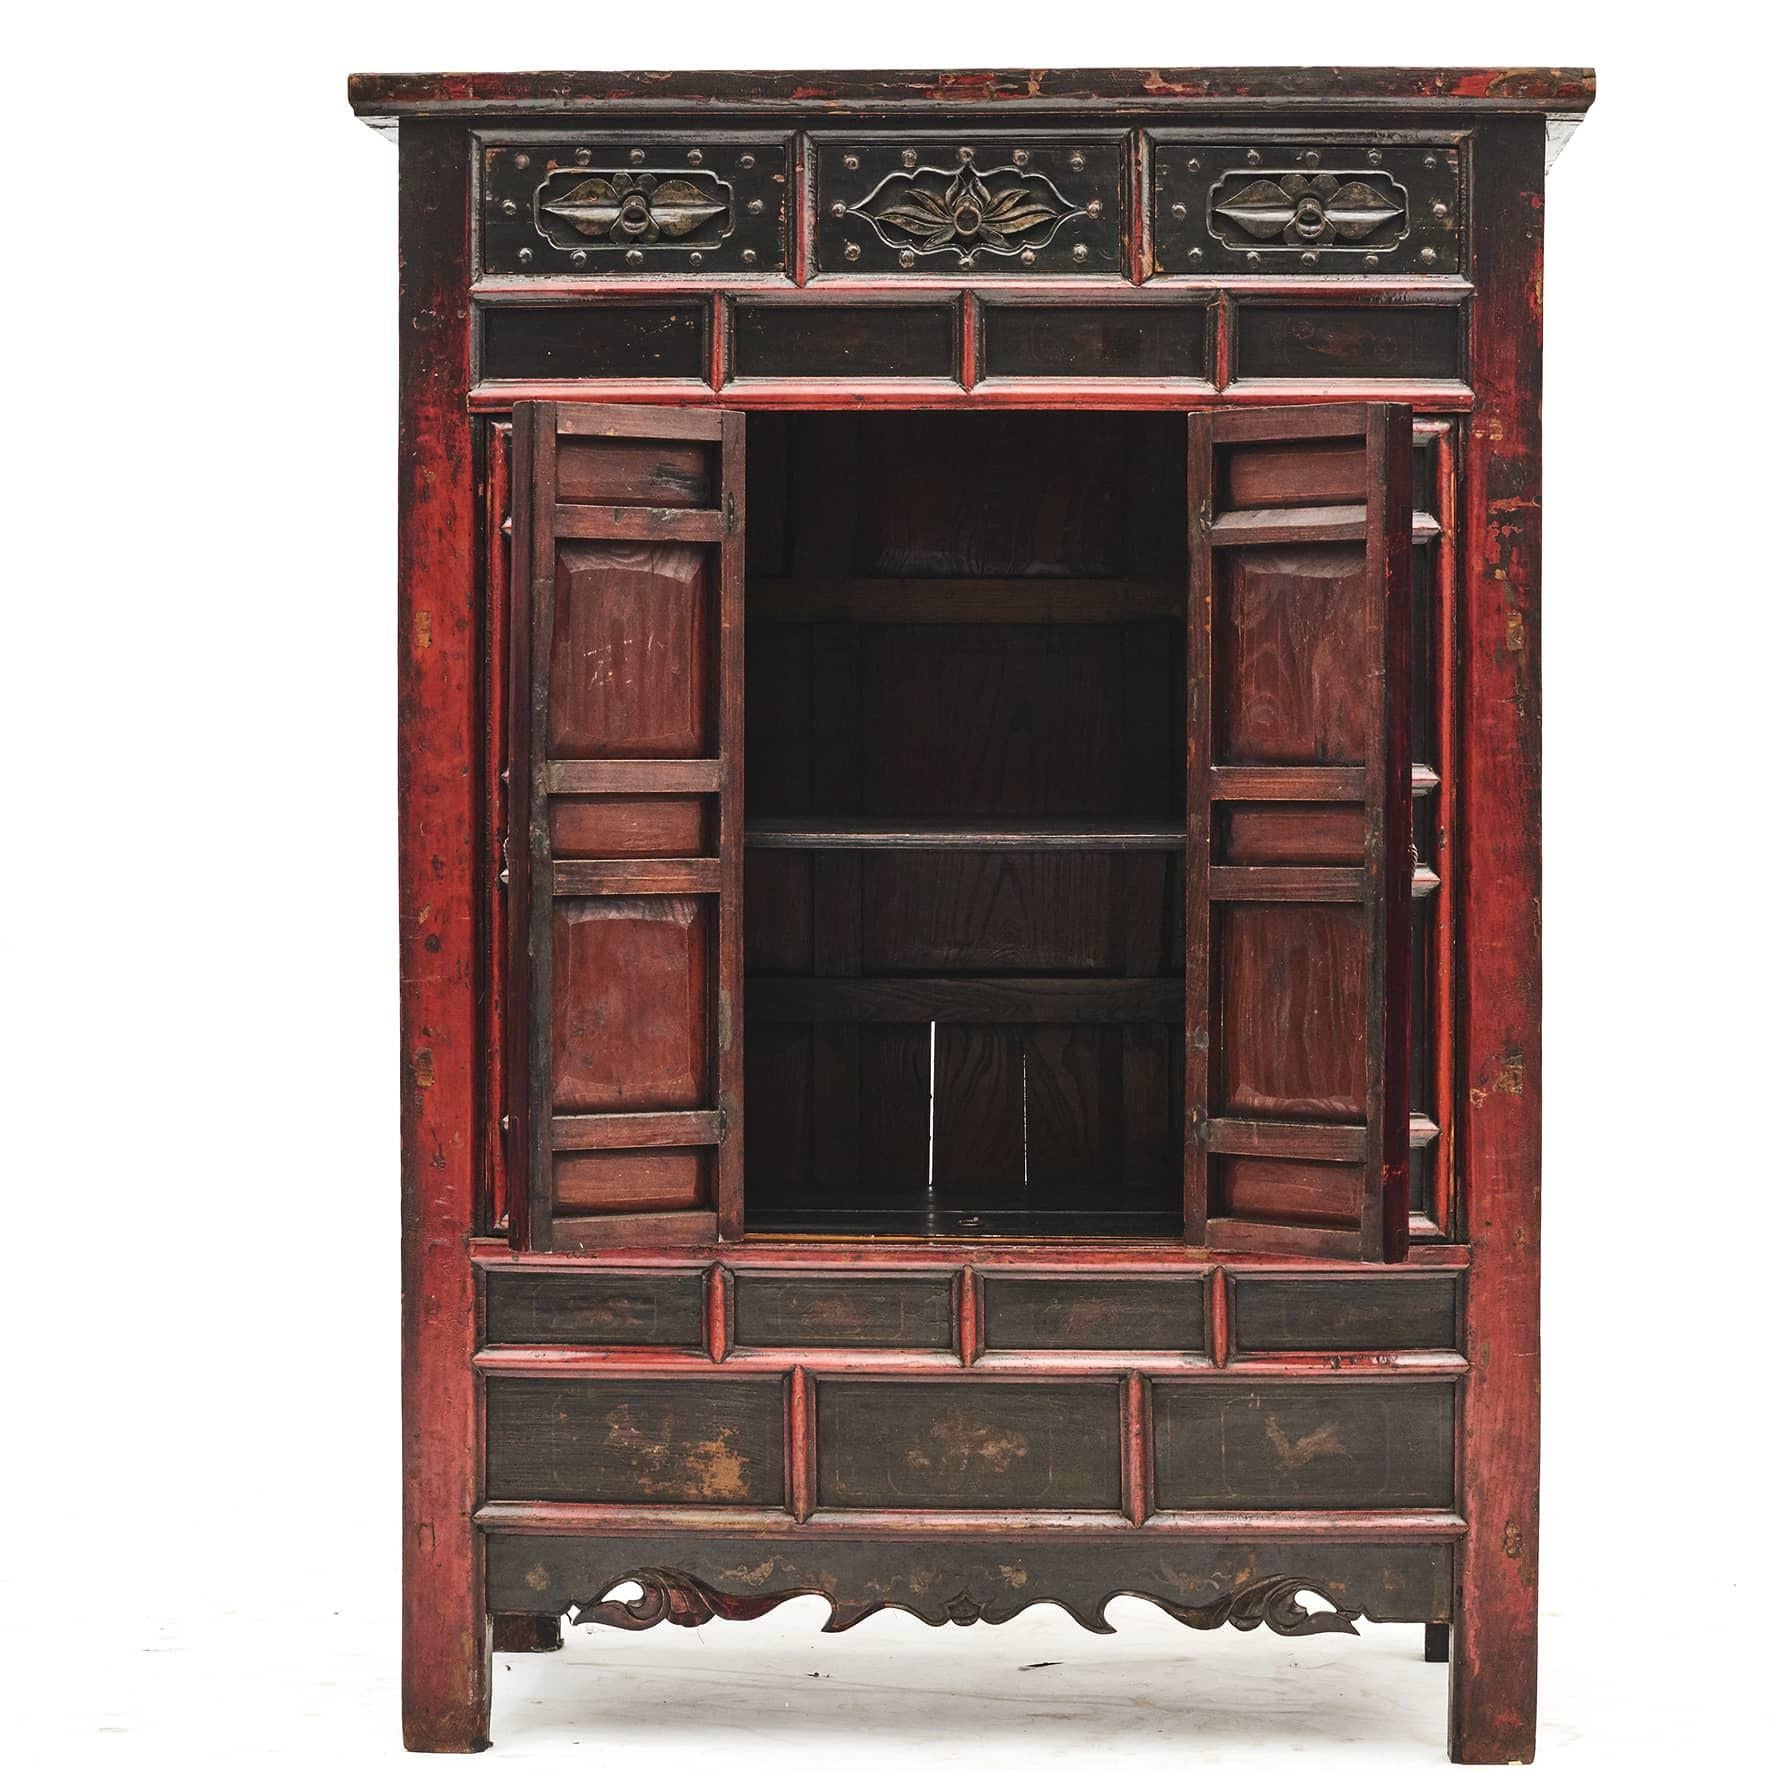 Cabinet de la fin du XVIIIe siècle provenant de Shanxi, en Chine.
Laque d'origine rouge et noire avec une légère finition de surface claire, qui met en valeur la belle patine naturelle.
Paire de portes à deux battants avec décorations et 3 tiroirs